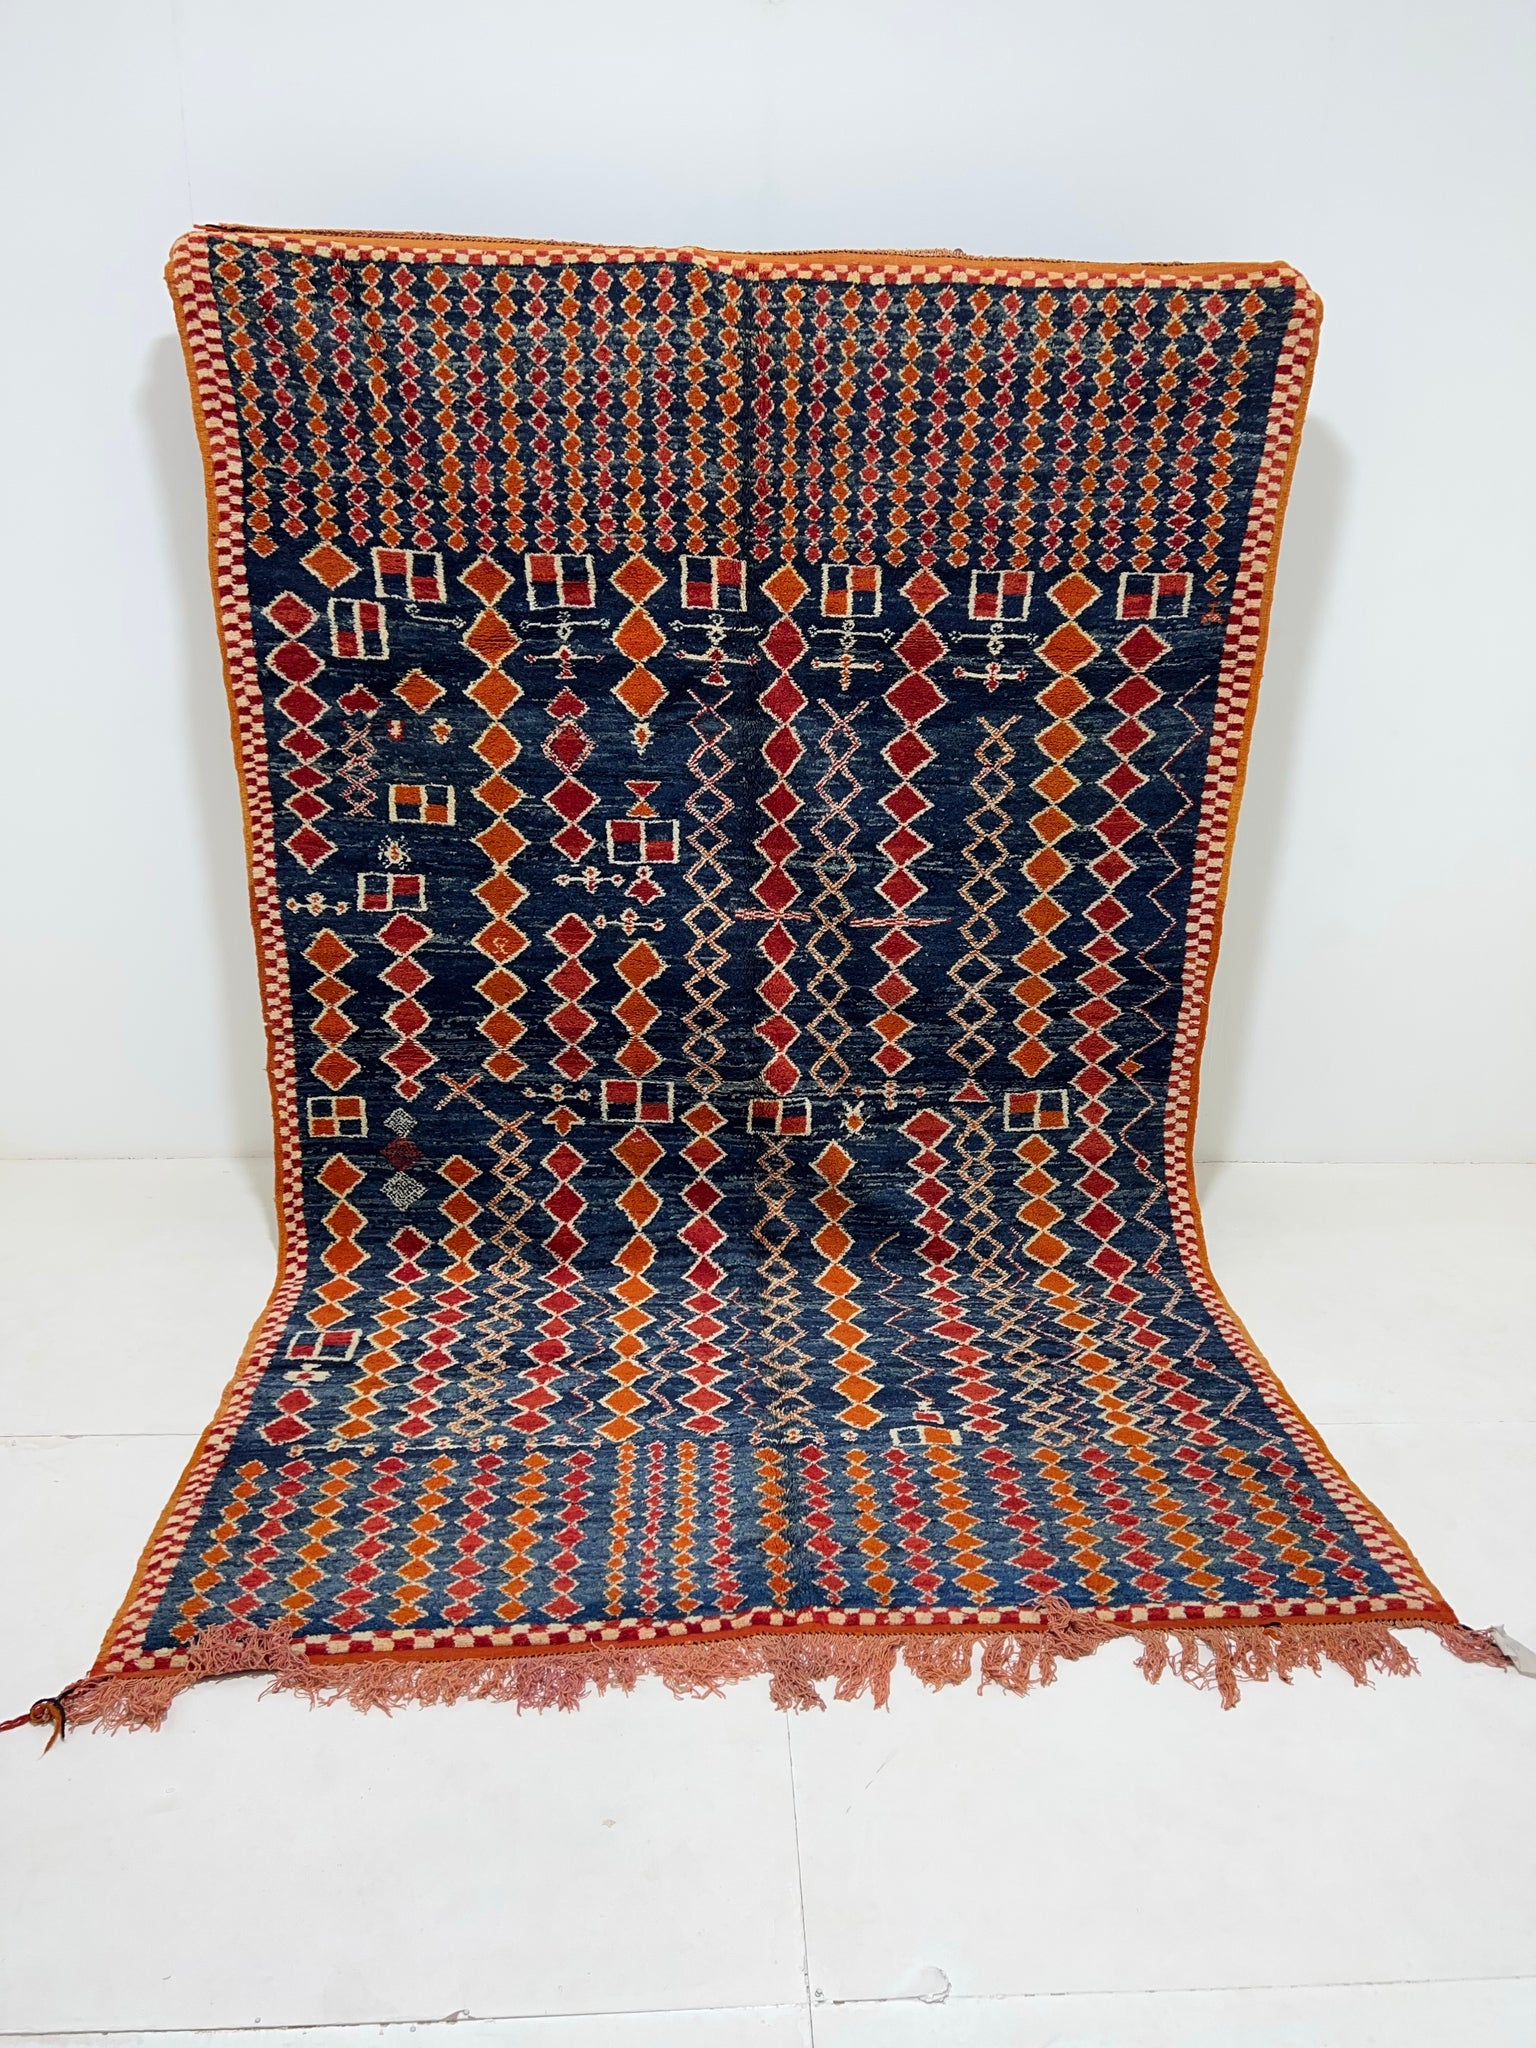 Vintage berber rug : 6.3ft x 9.7ft / 190cm x 292cm